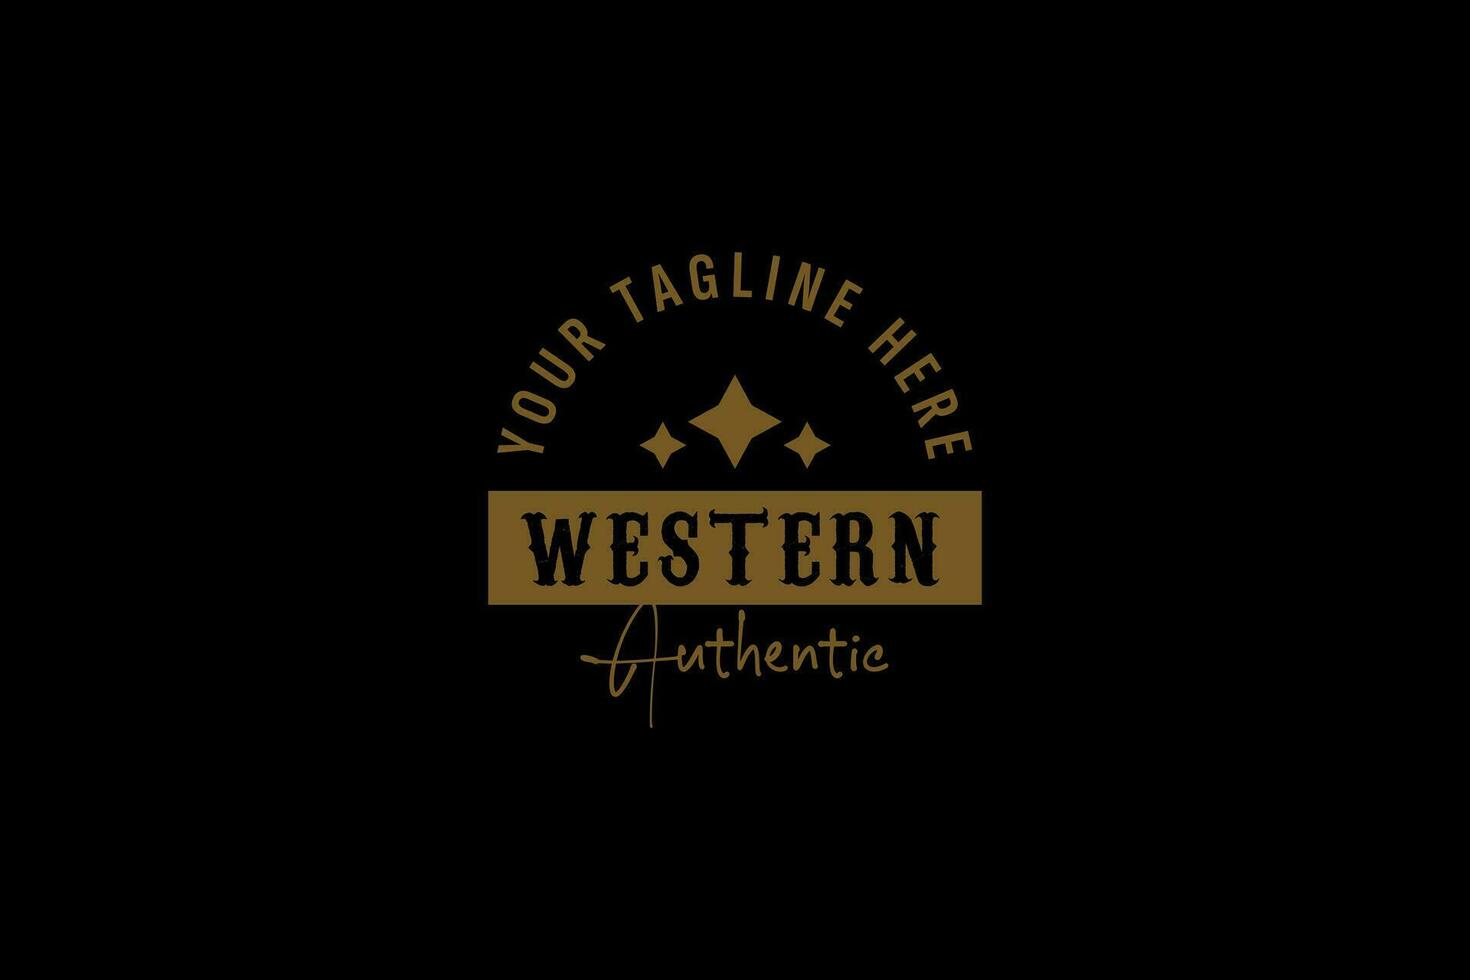 vintage land emblem typografi för västra bar restaurang logo design inspiration vektor